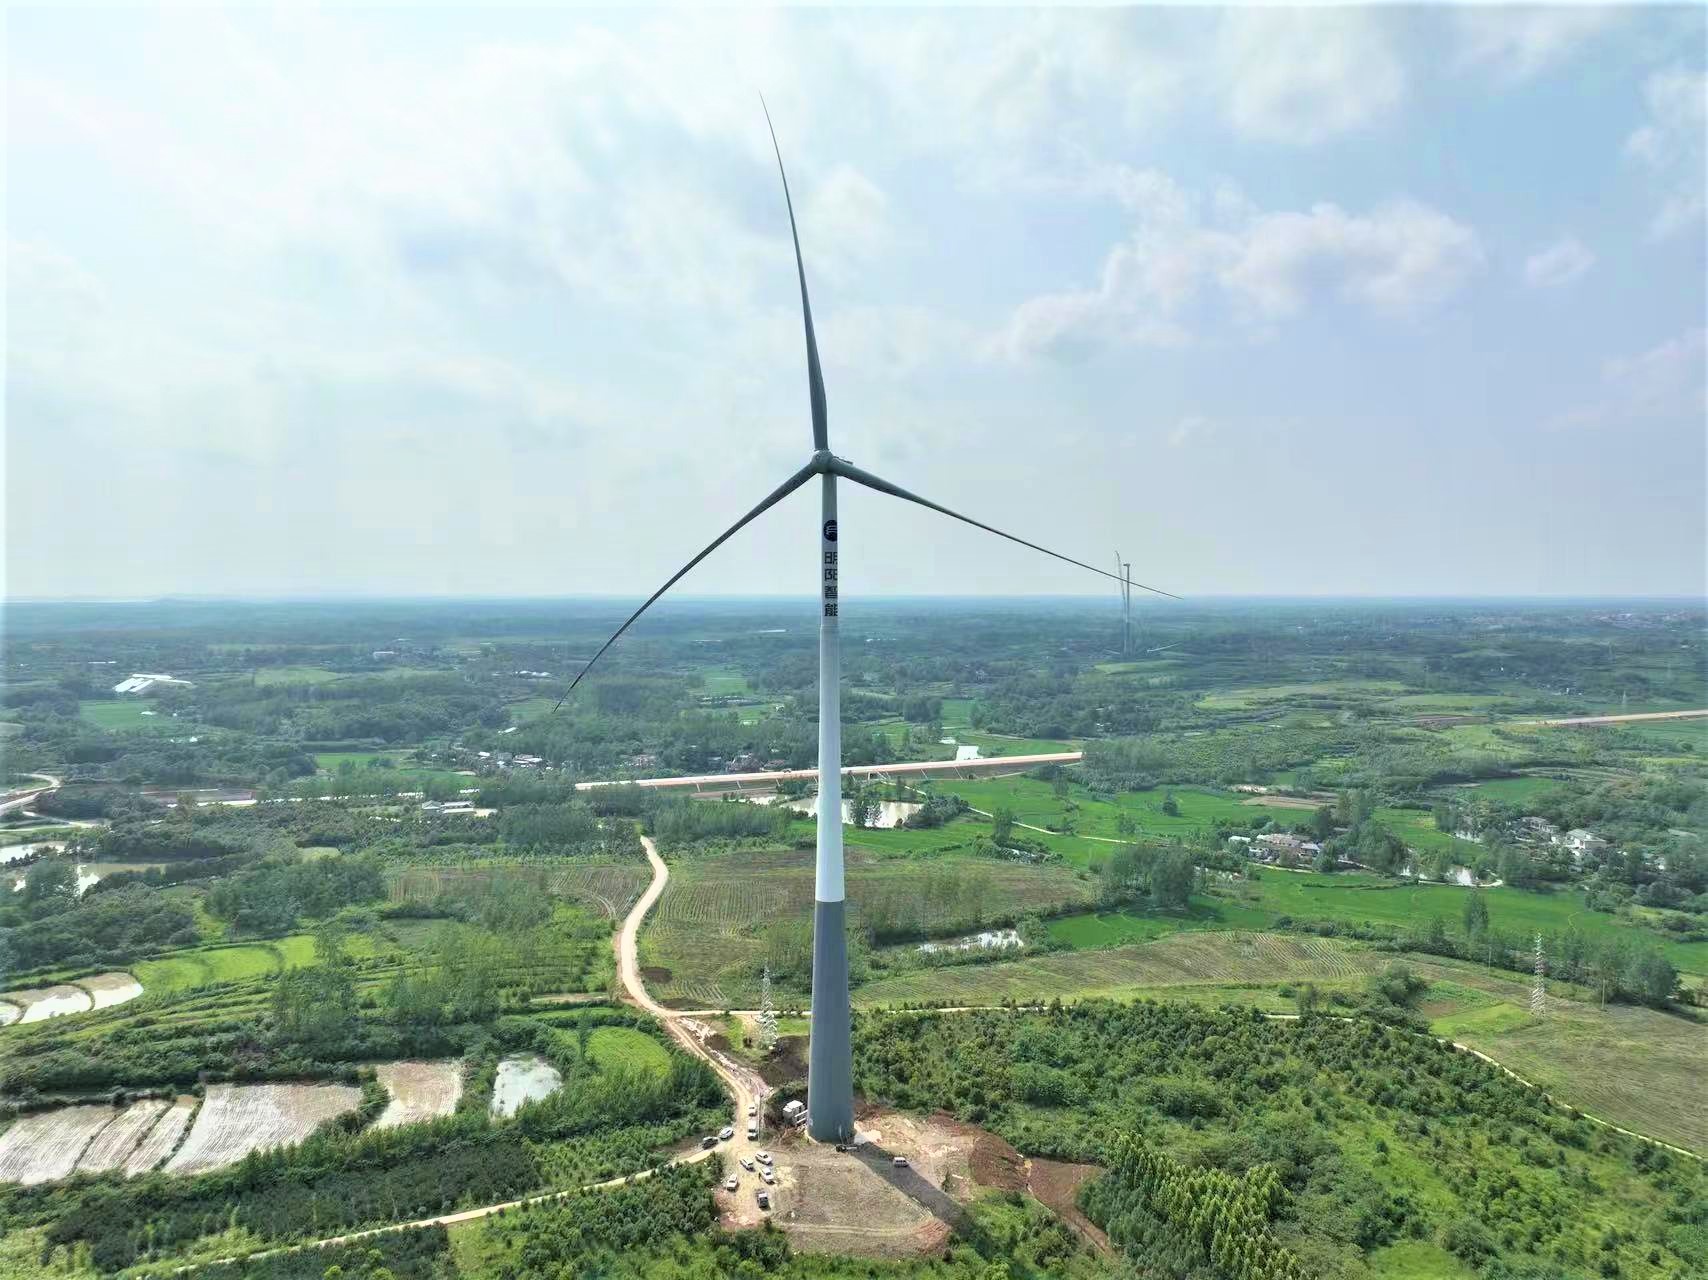 中国风机首次进军菲律宾市场！yabo2021vip智能签约菲律宾规模最大风电项目